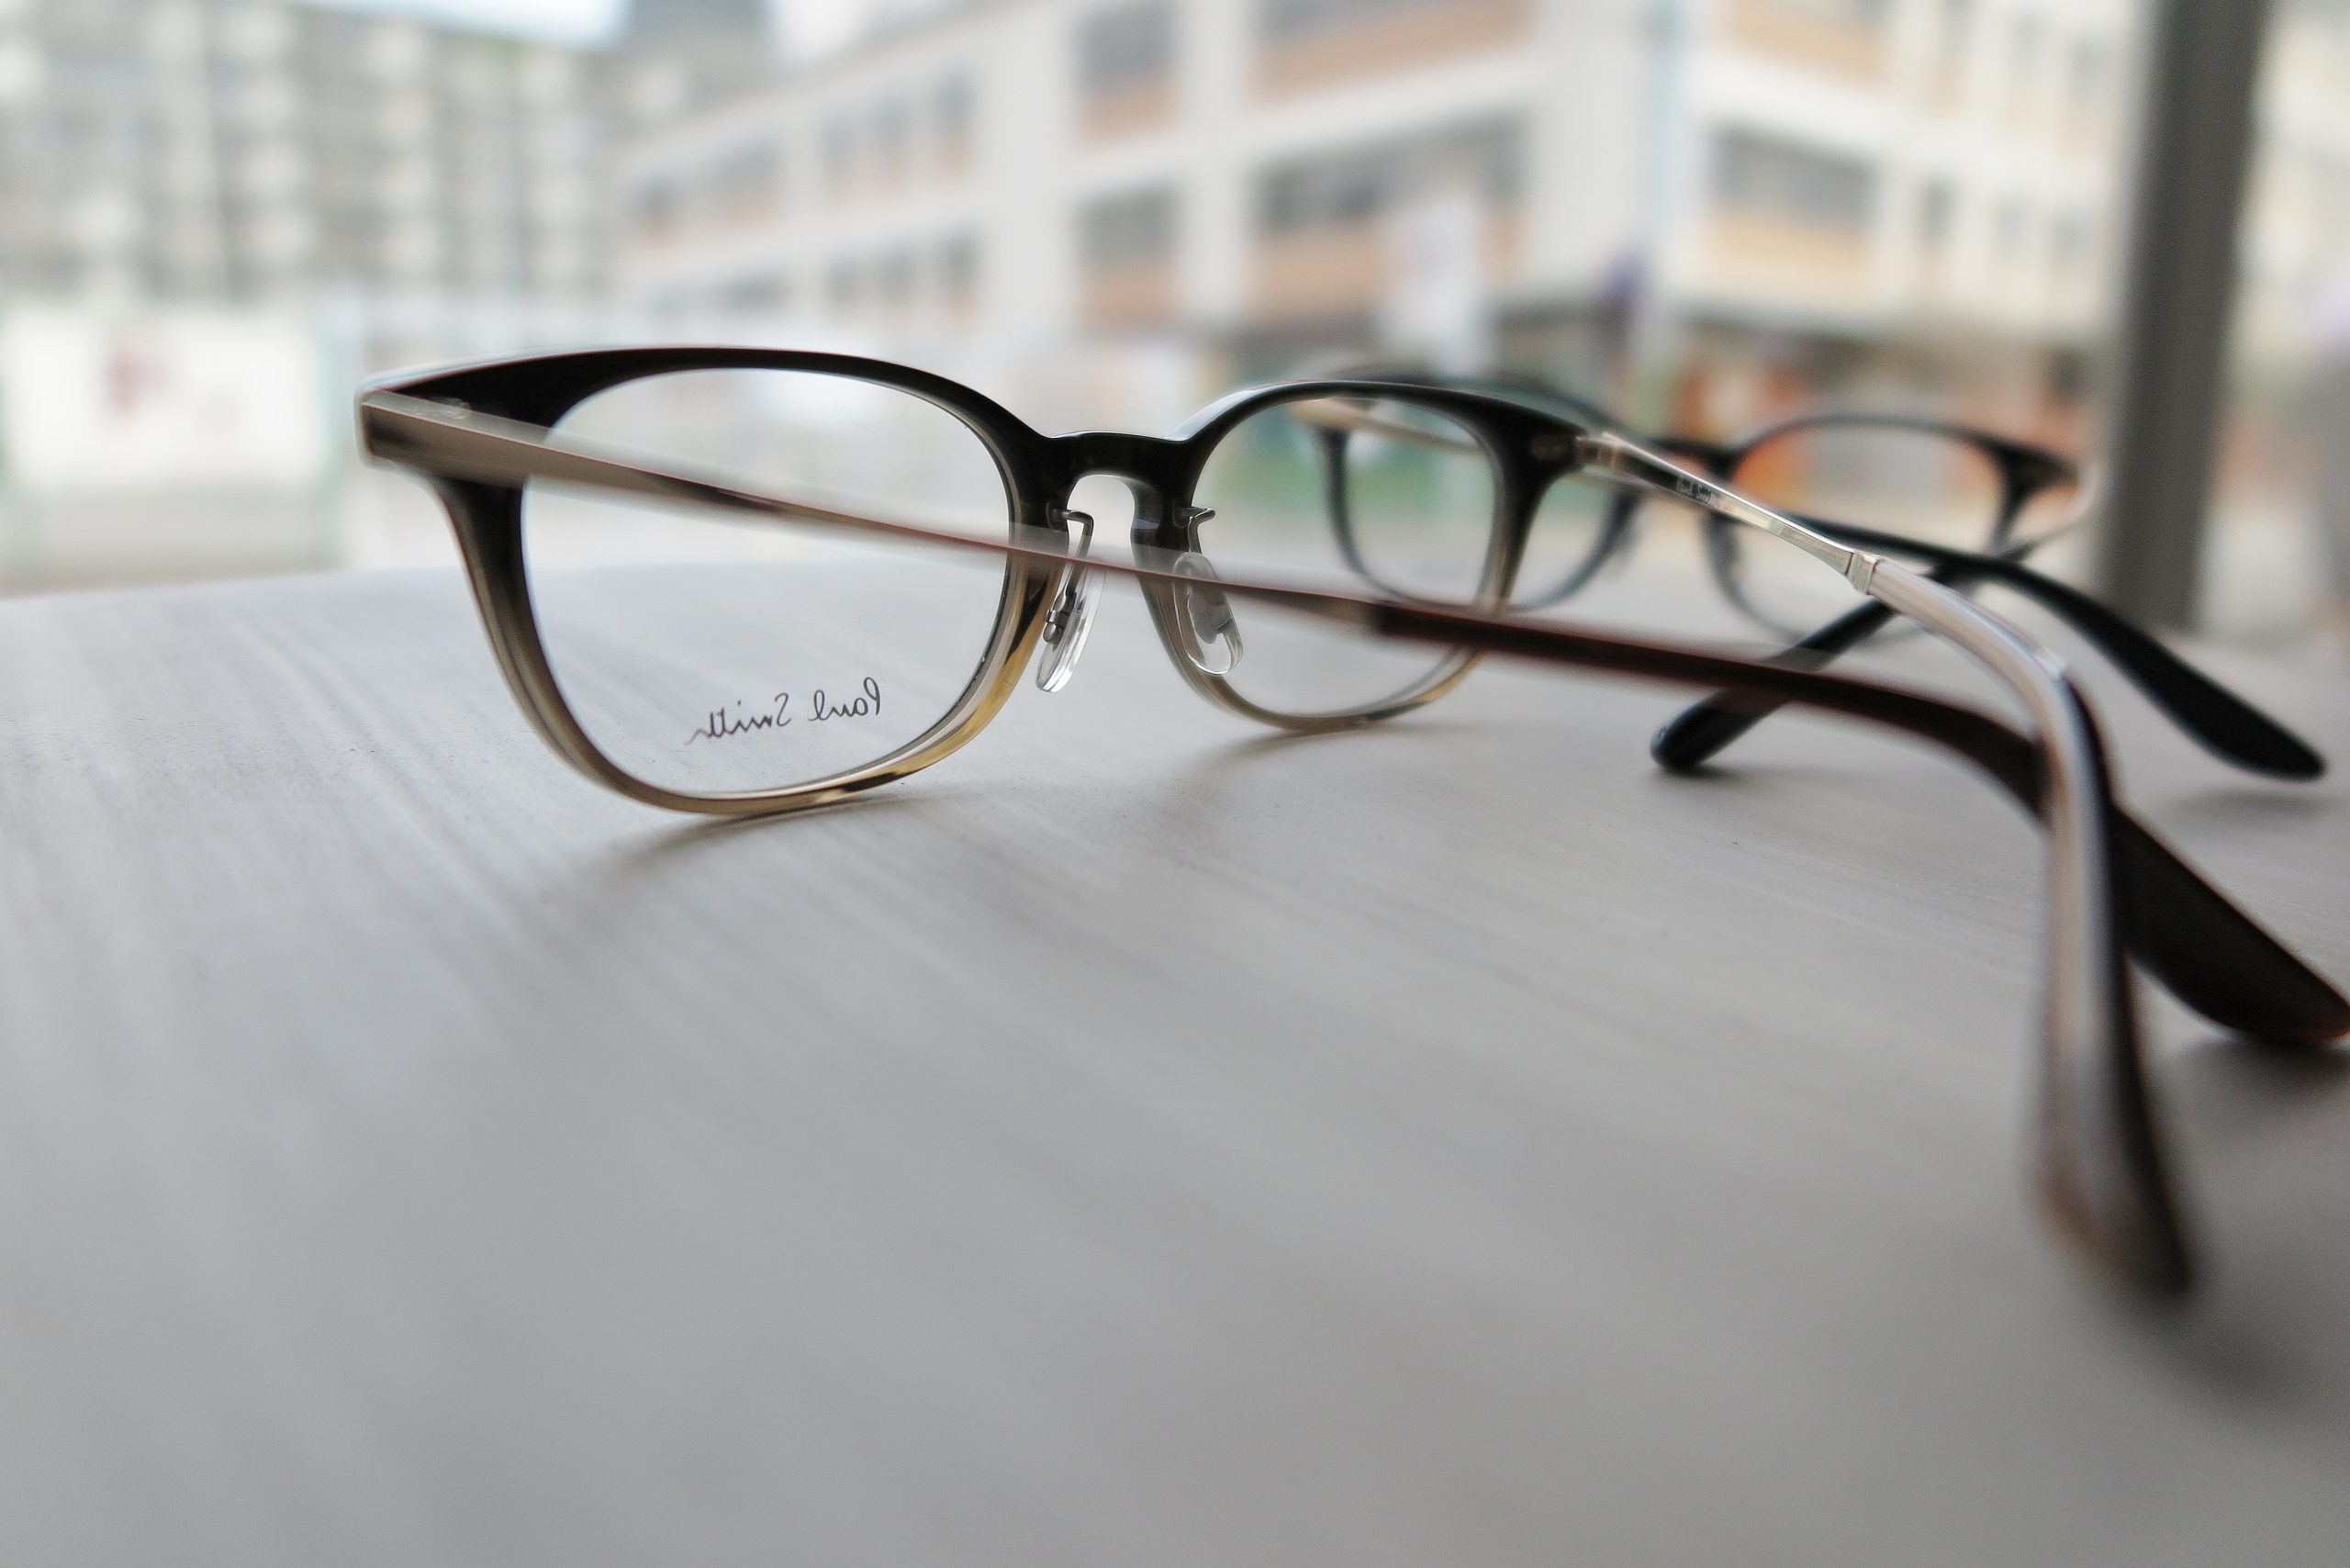 スッキリシェイプのコンビネーション Paulsmith Pse 5002 イオン洛南店 メガネのノハラ 眼鏡 補聴器